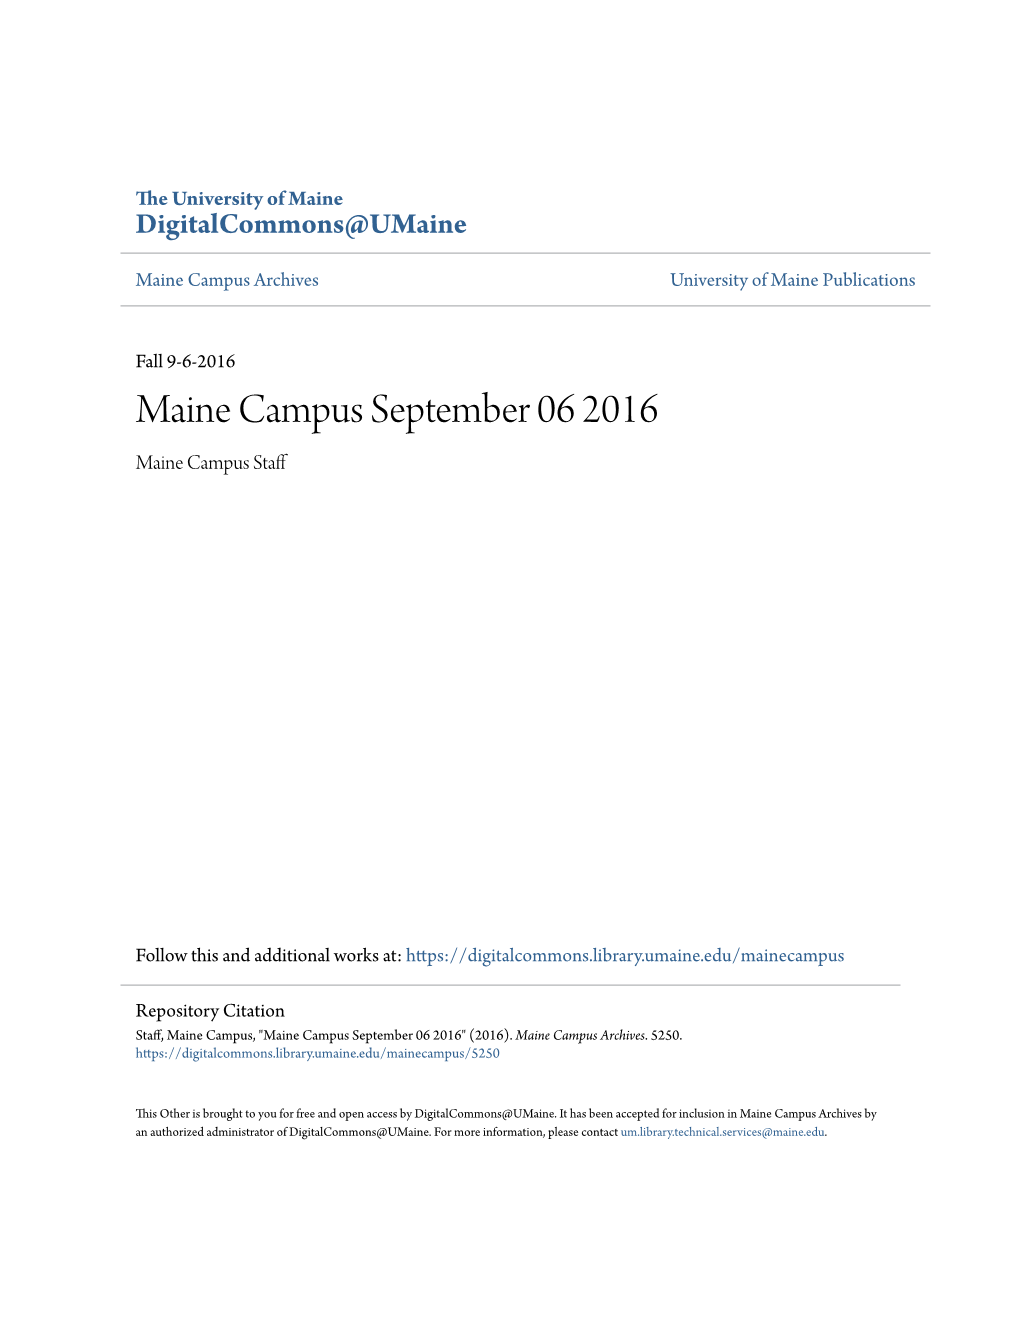 Maine Campus September 06 2016 Maine Campus Staff